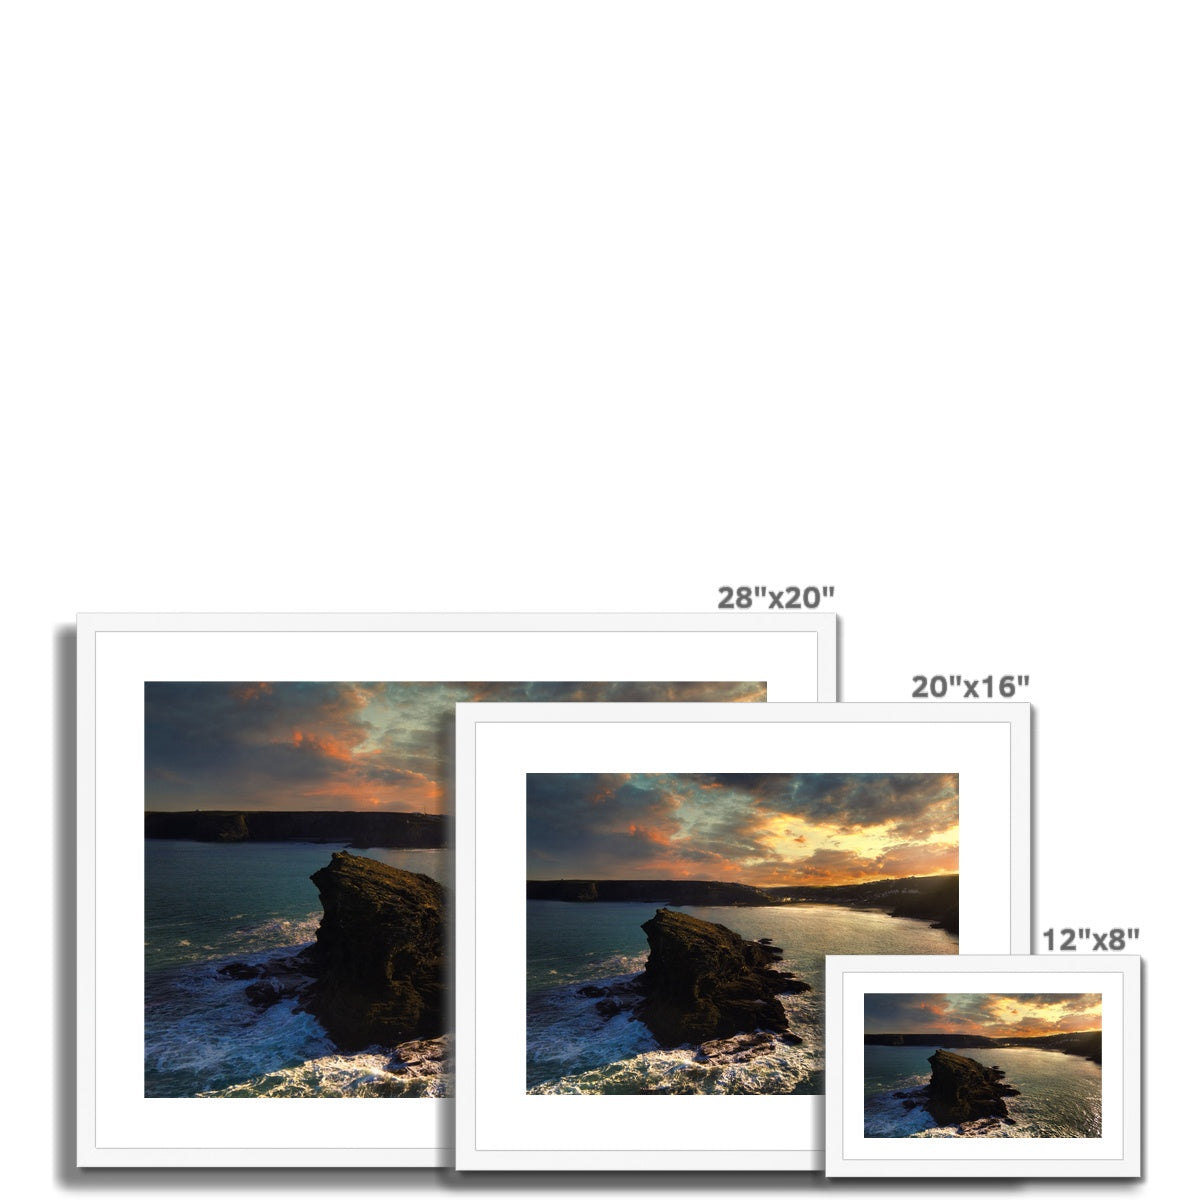 gull rock portreath frame sizes